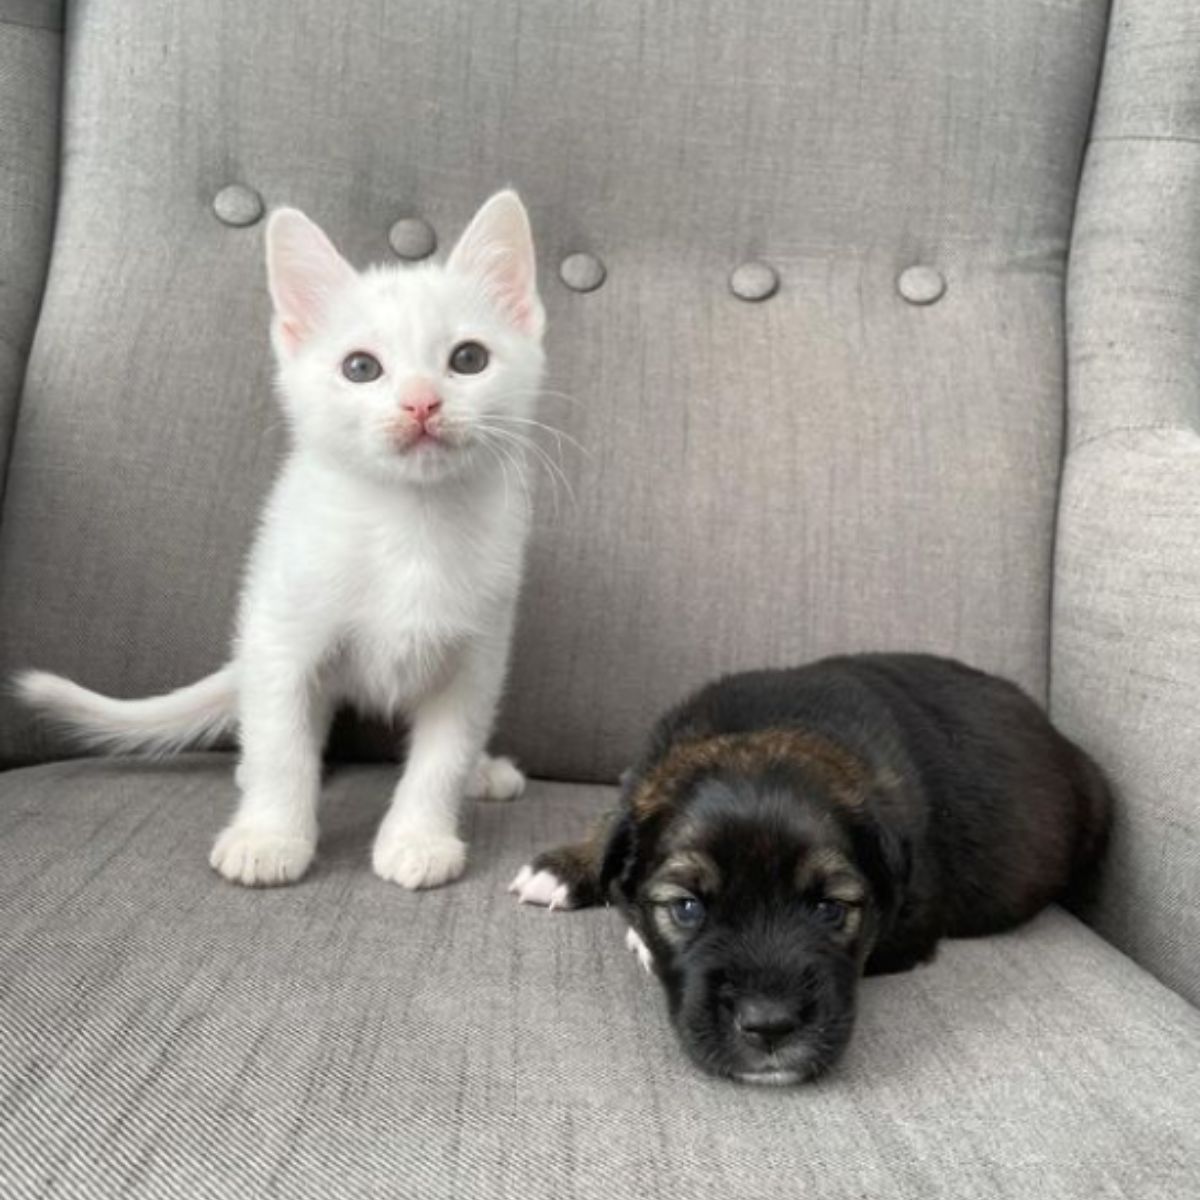 kitten sitting next to a puppy